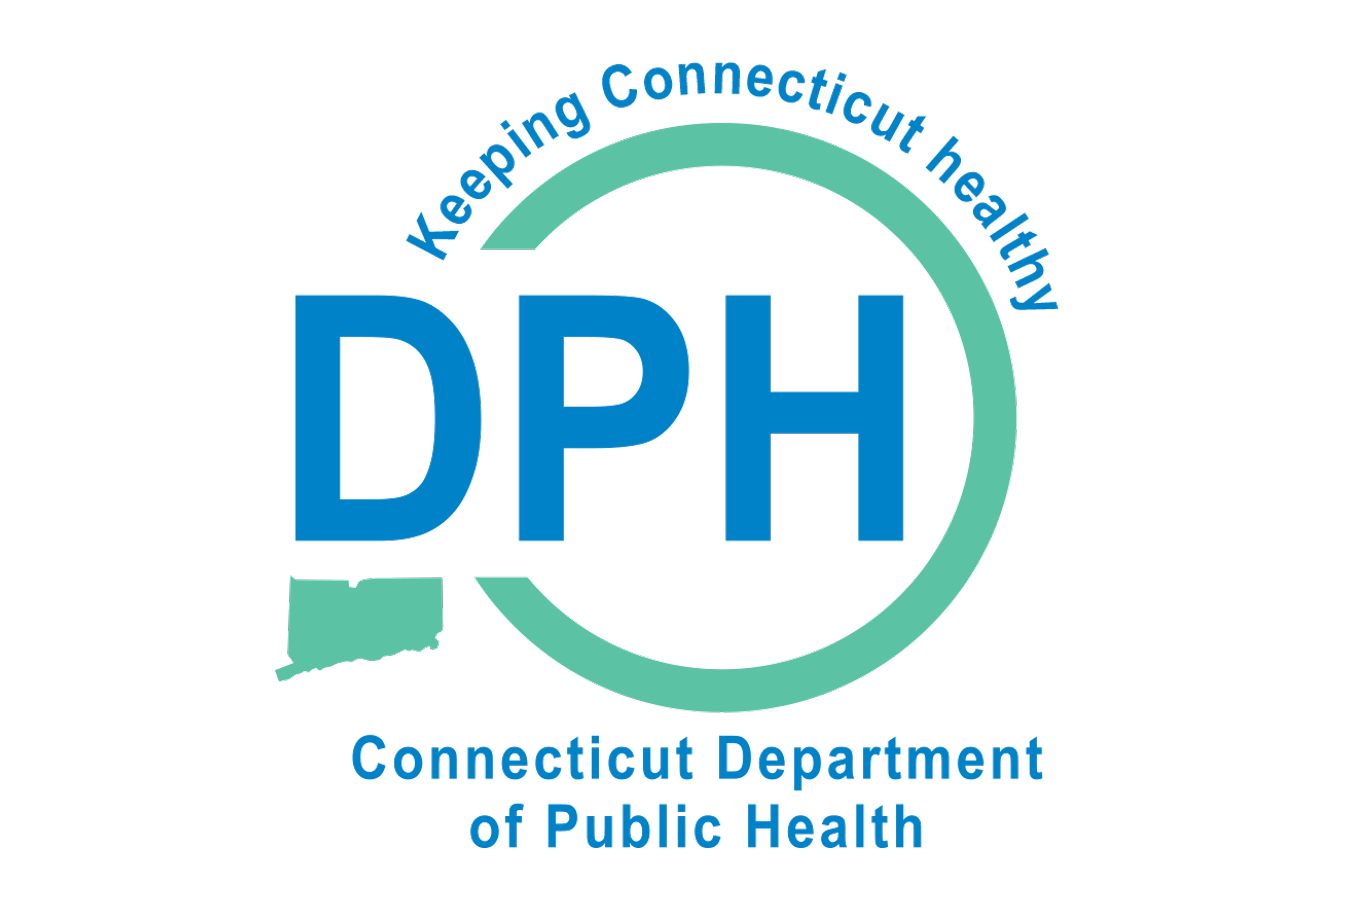 dph logo